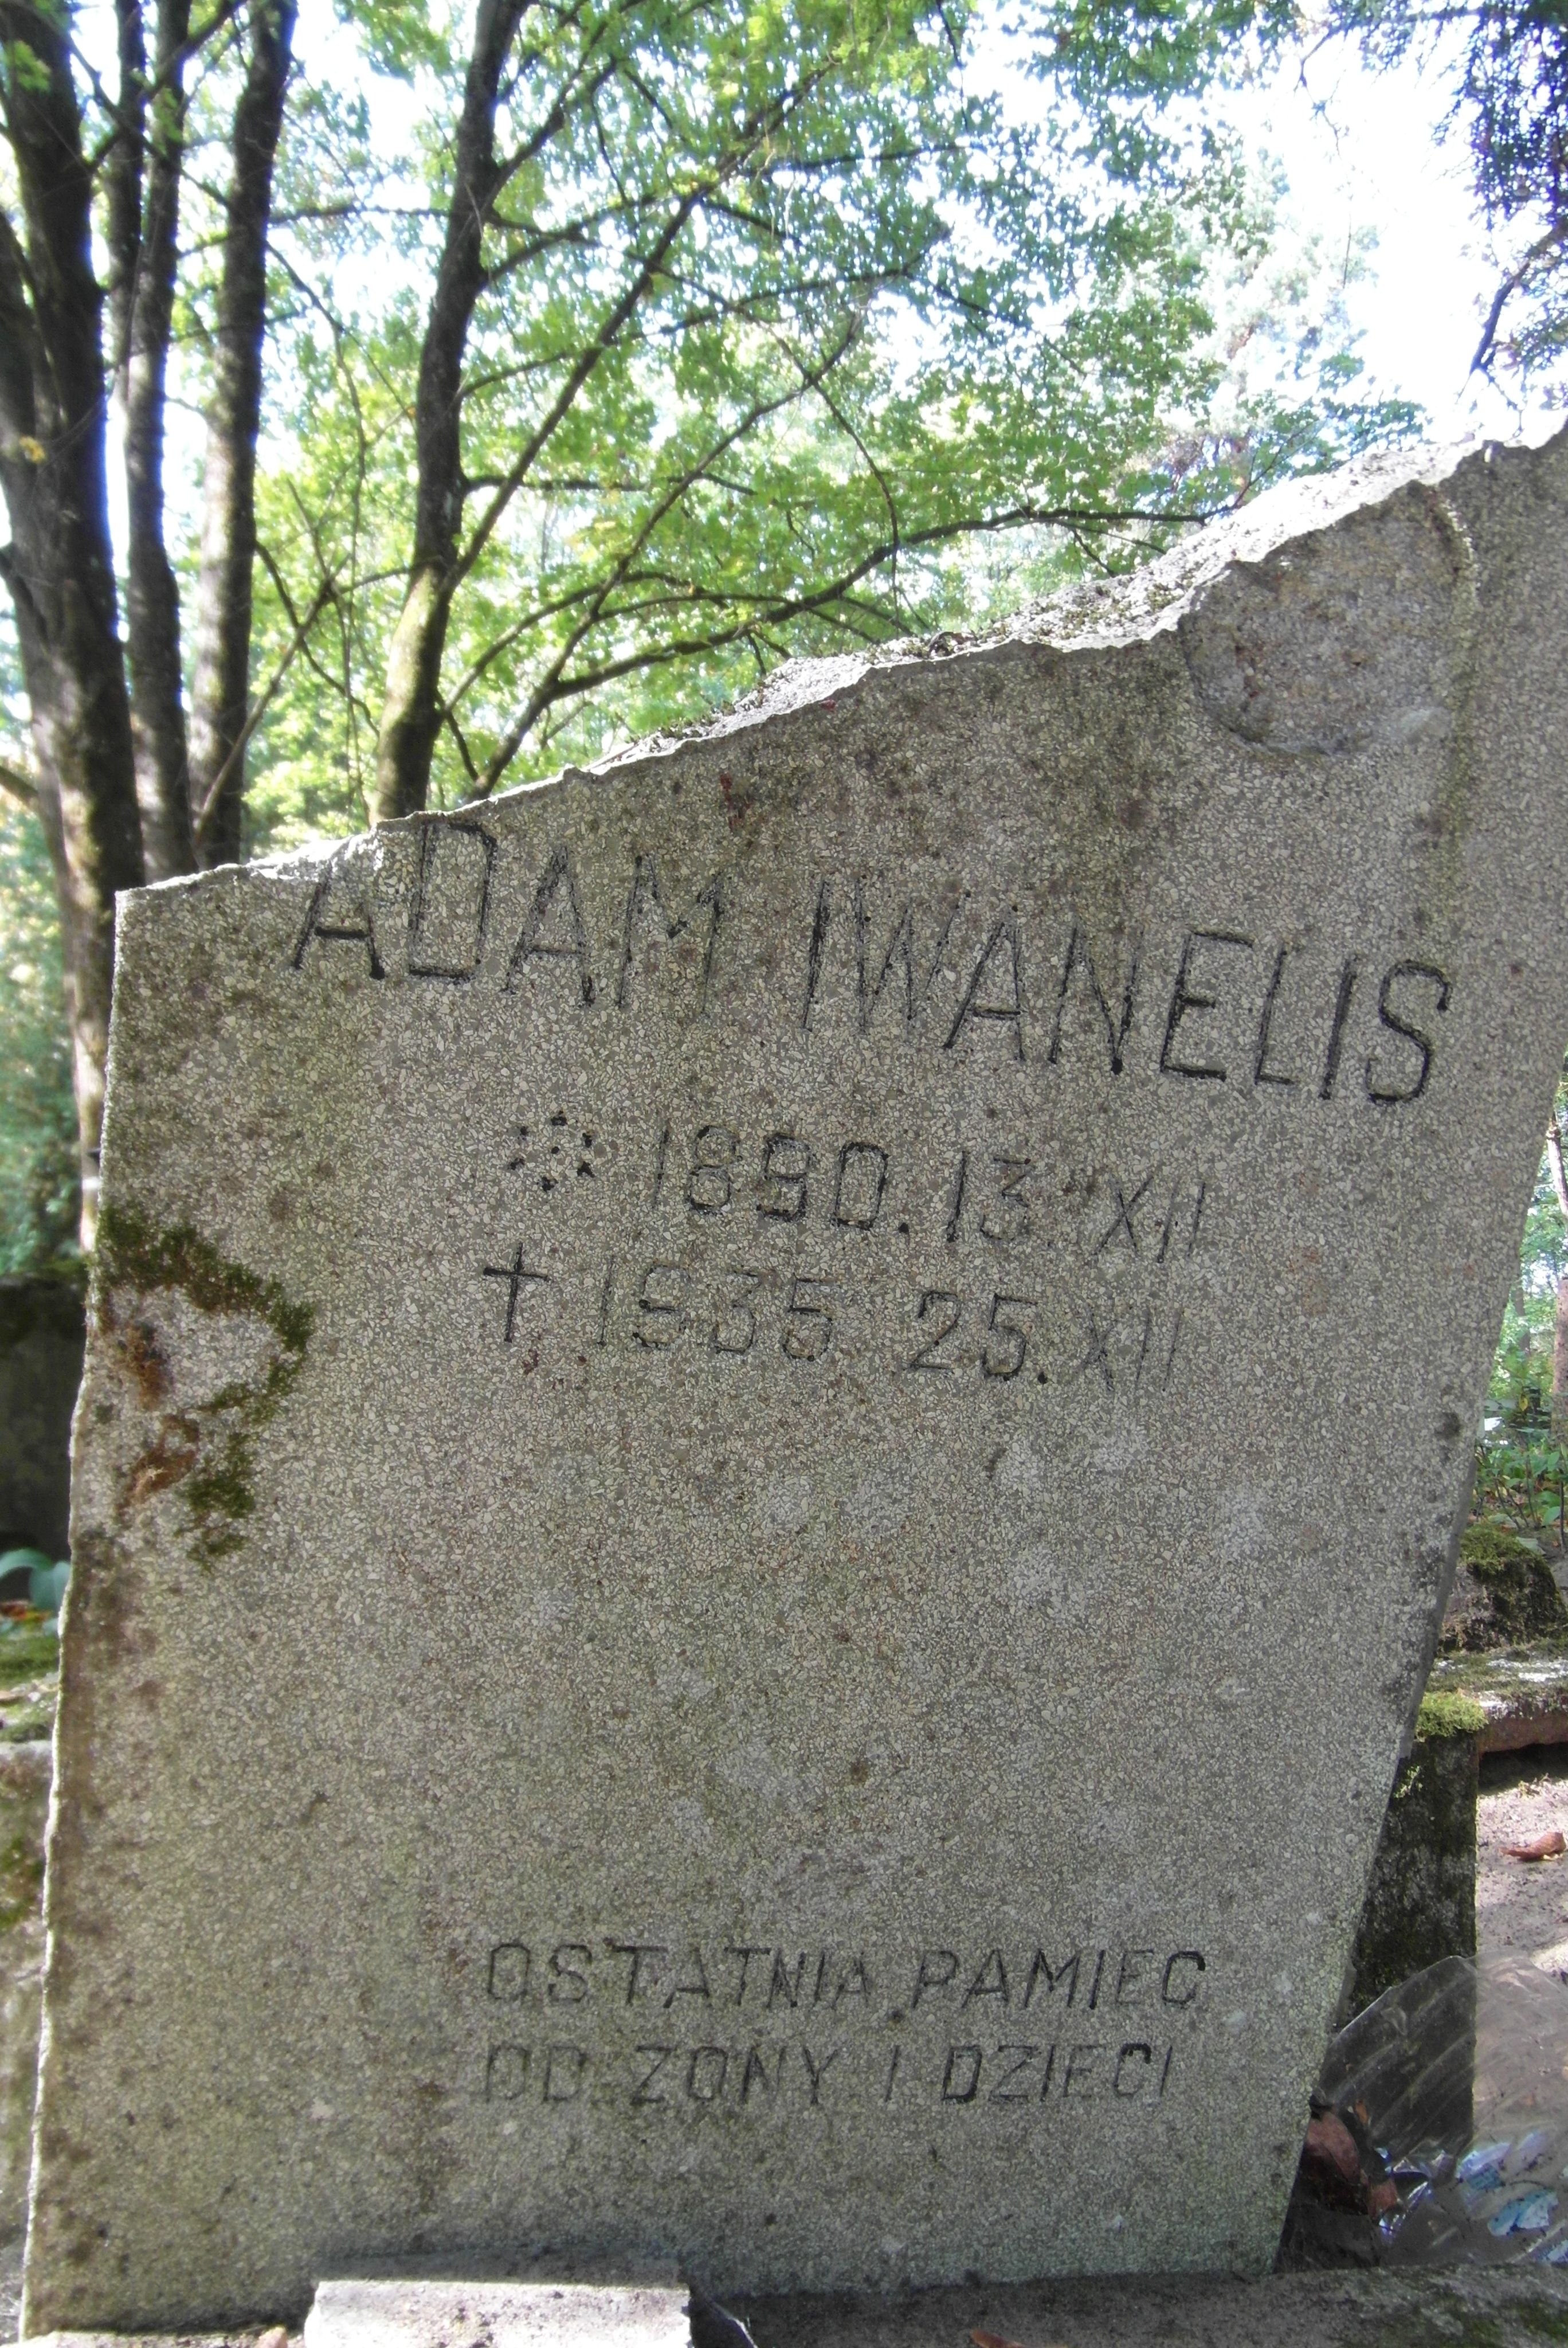 Napis z nagrobka Adama Iwanelisa, cmentarz św. Michała w Rydze, stan z 2021 r.